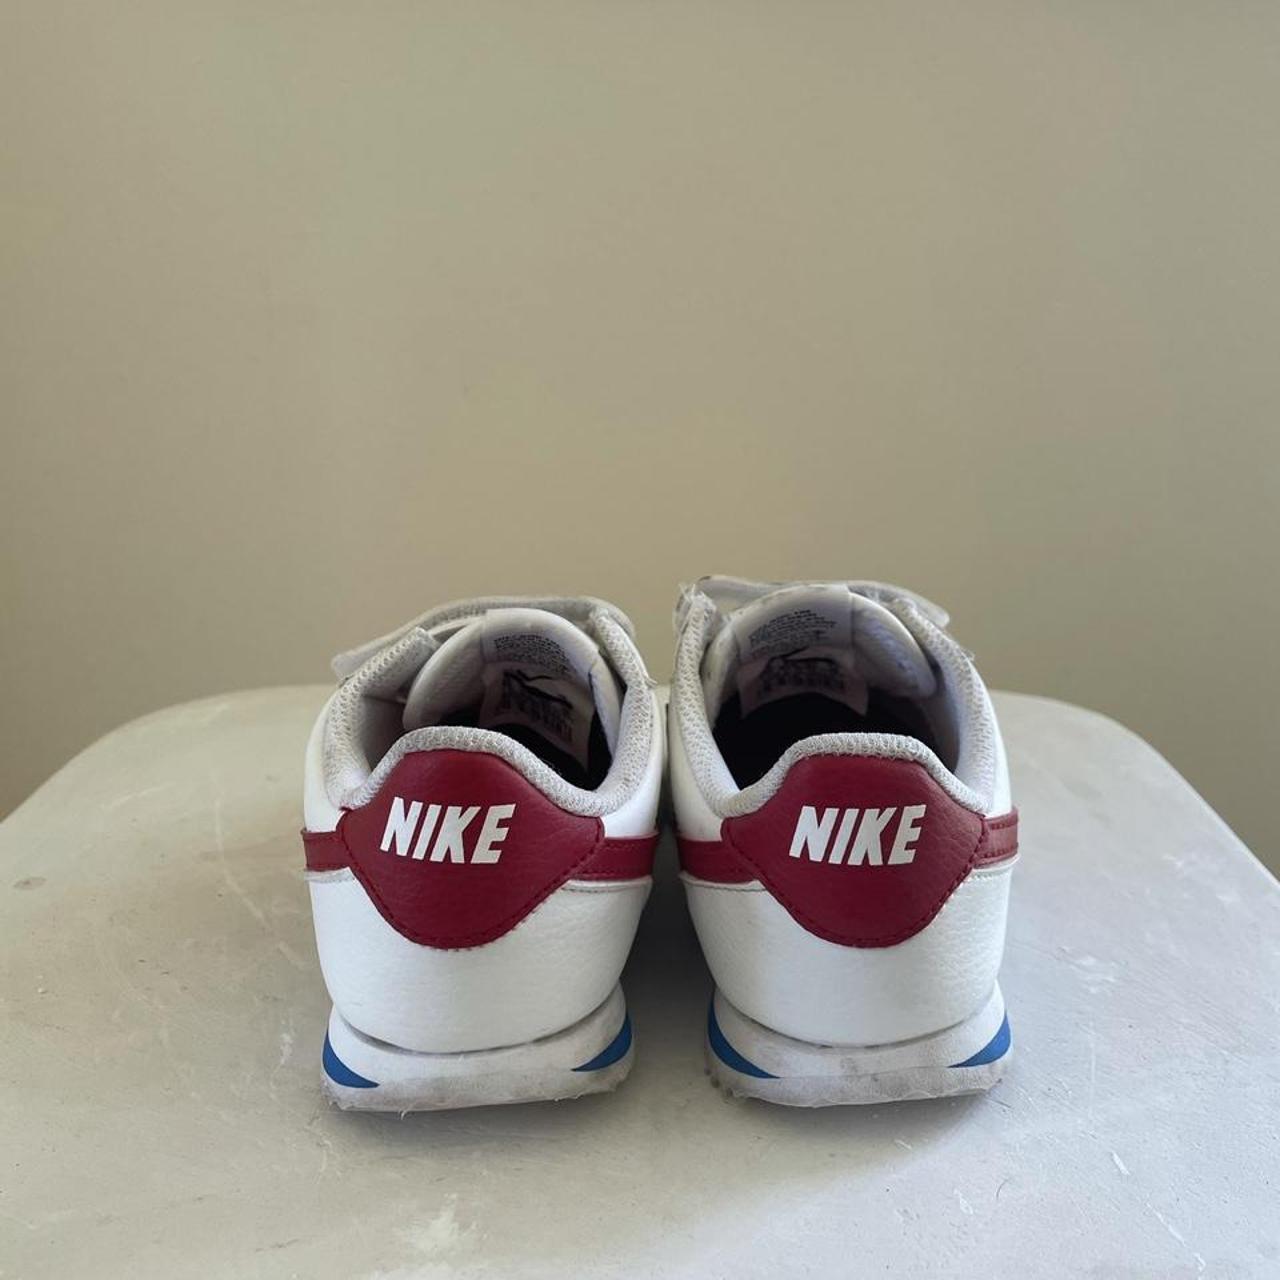 Classic NIKE cortez velcro sneakers 👟 Kids size :... - Depop